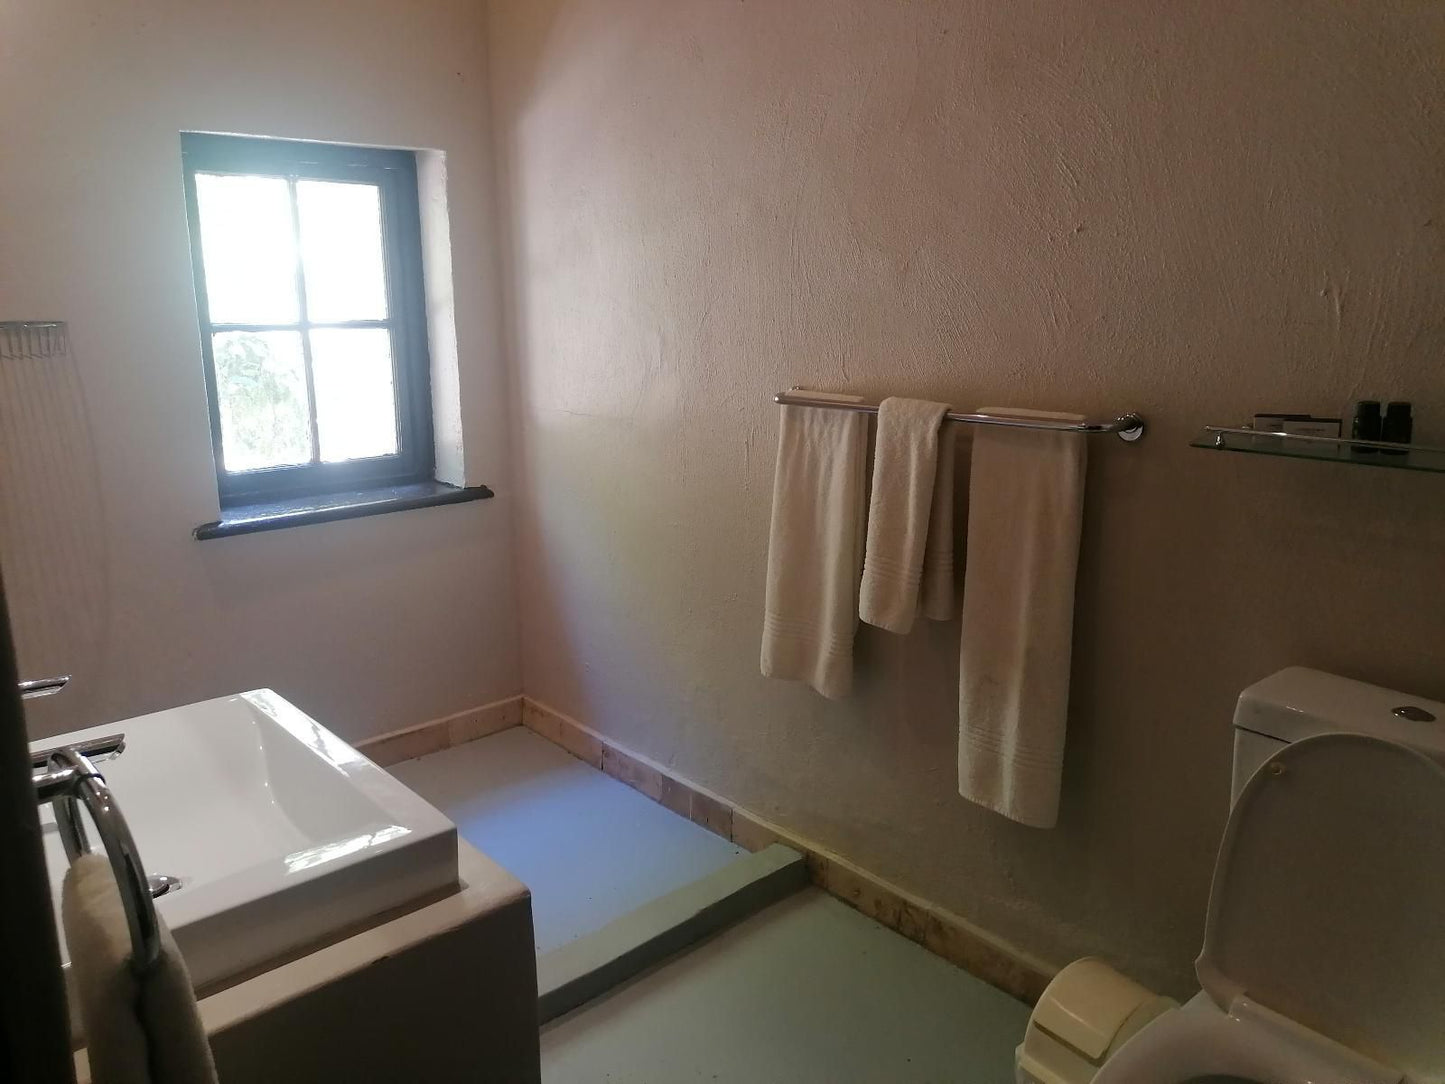 Clanwilliam Lodge Clanwilliam Western Cape South Africa Bathroom